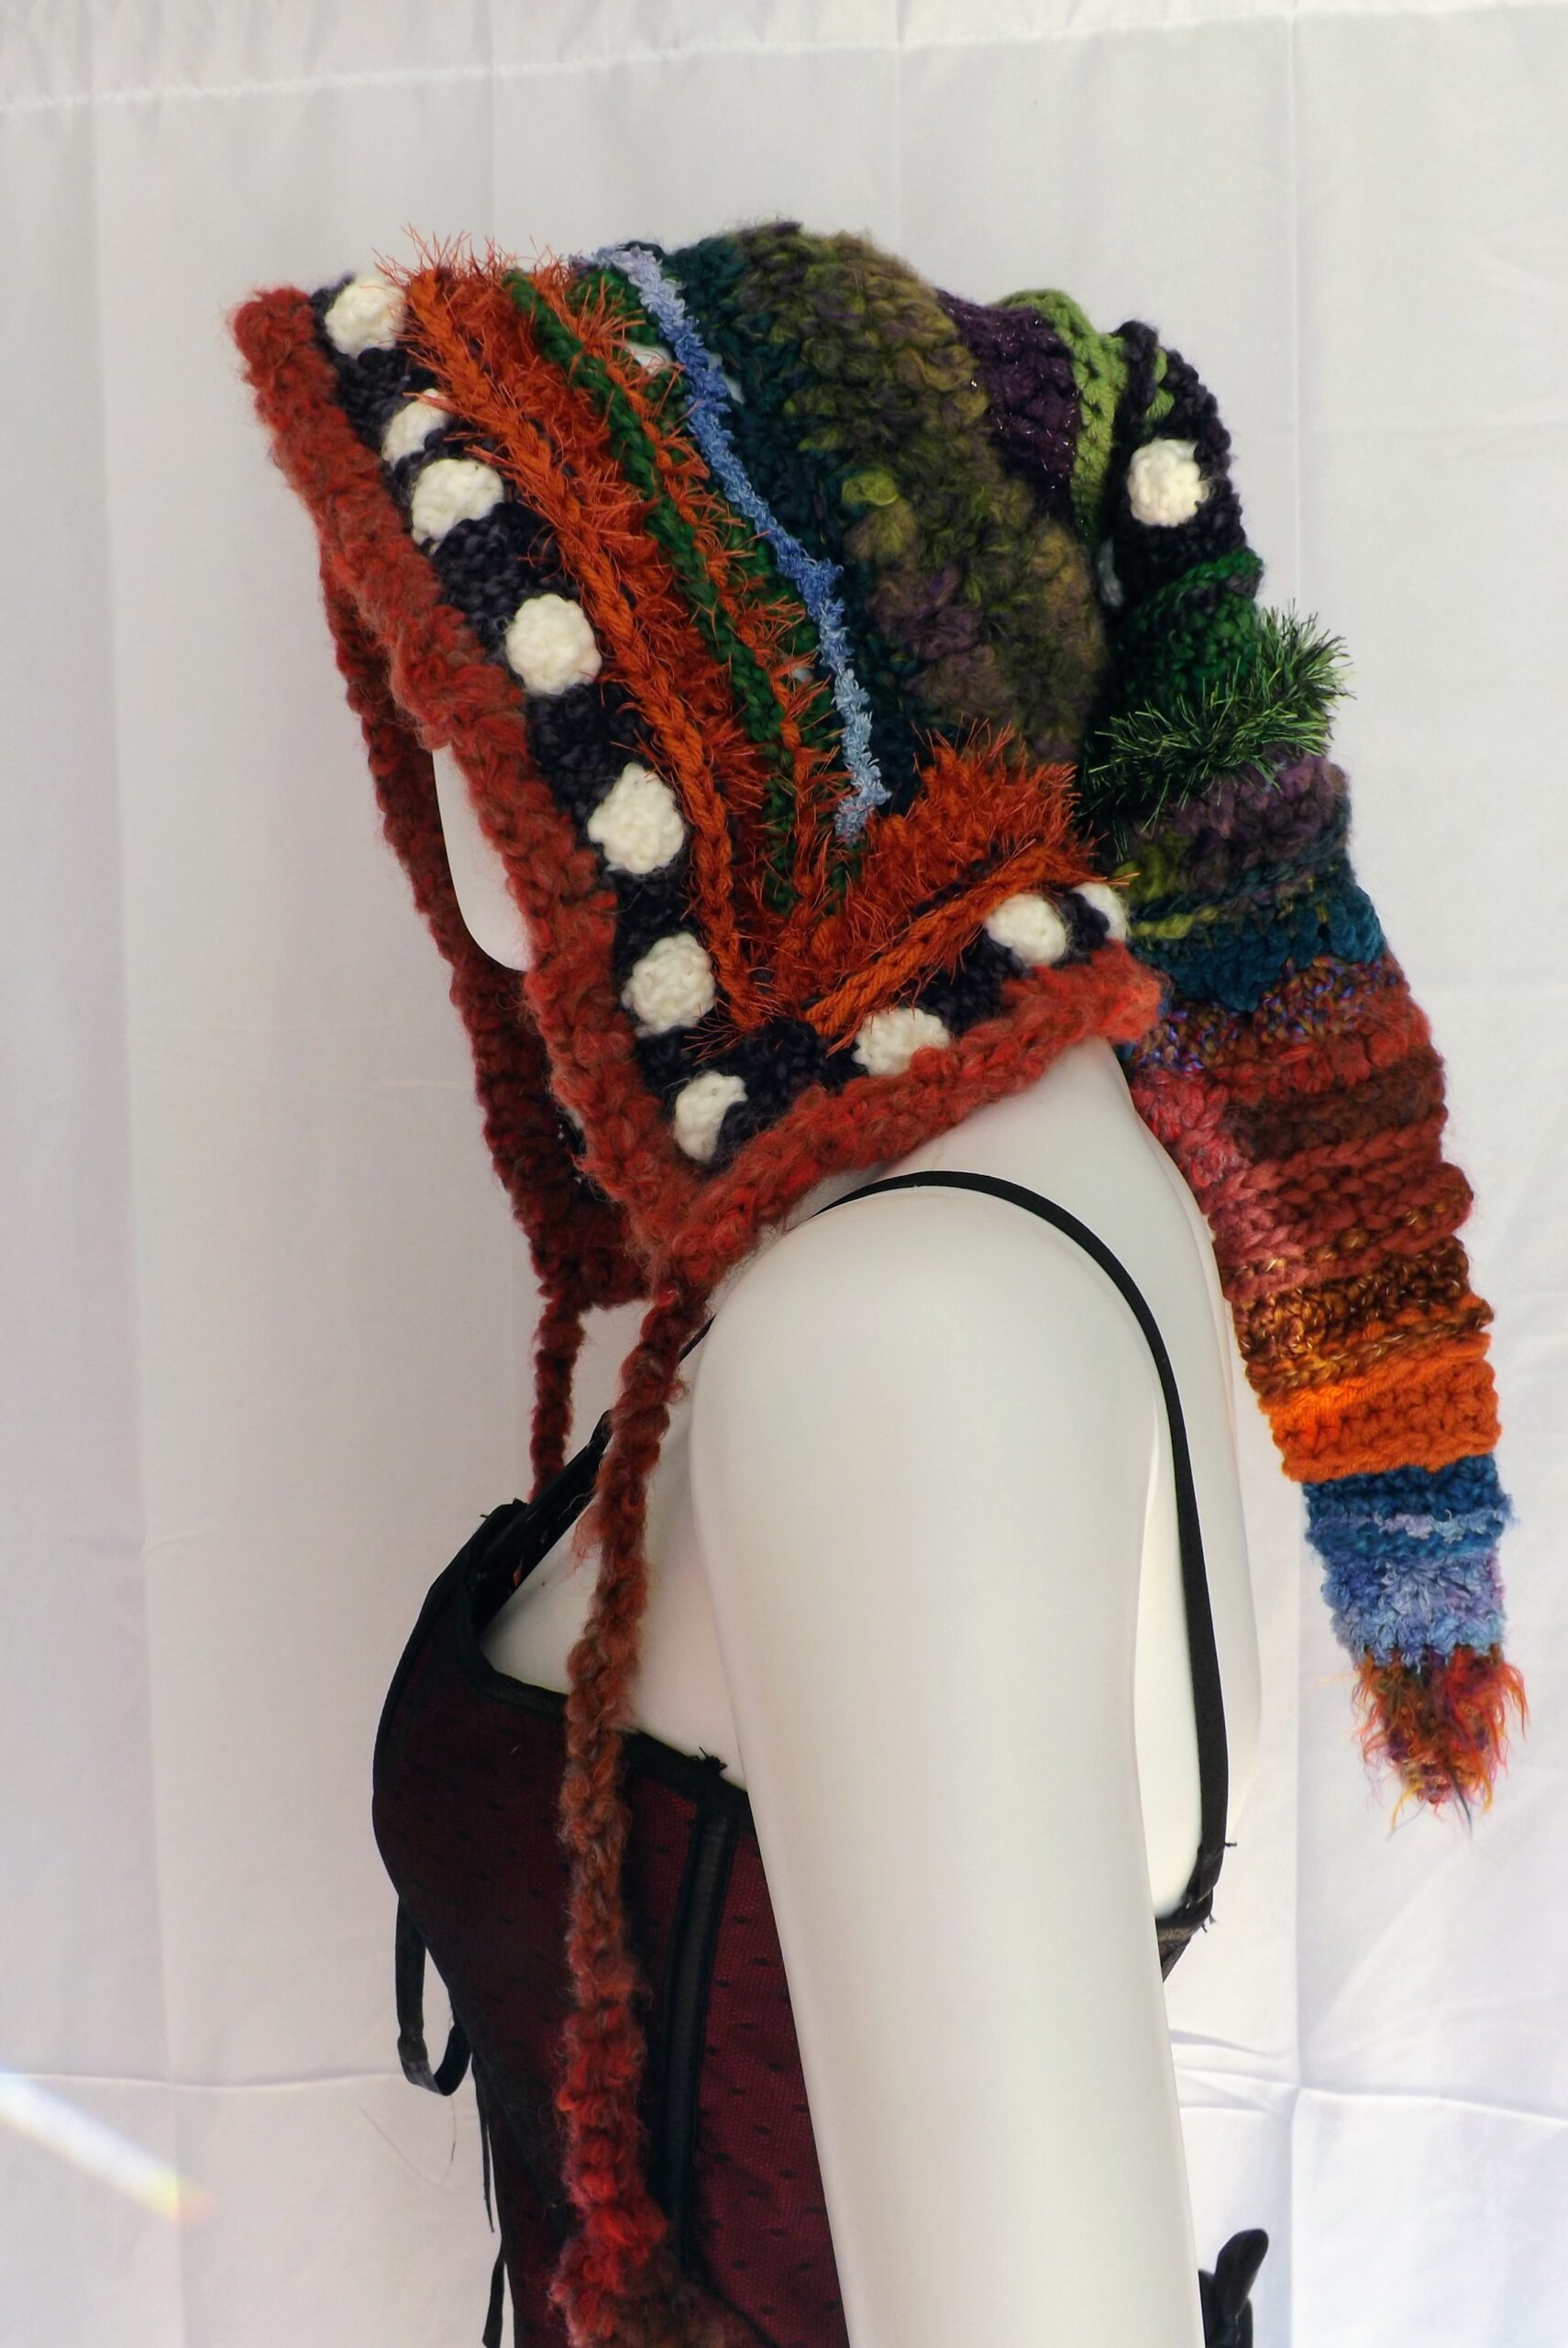 A wool and alpaca yarn crochet elf hood with long ties